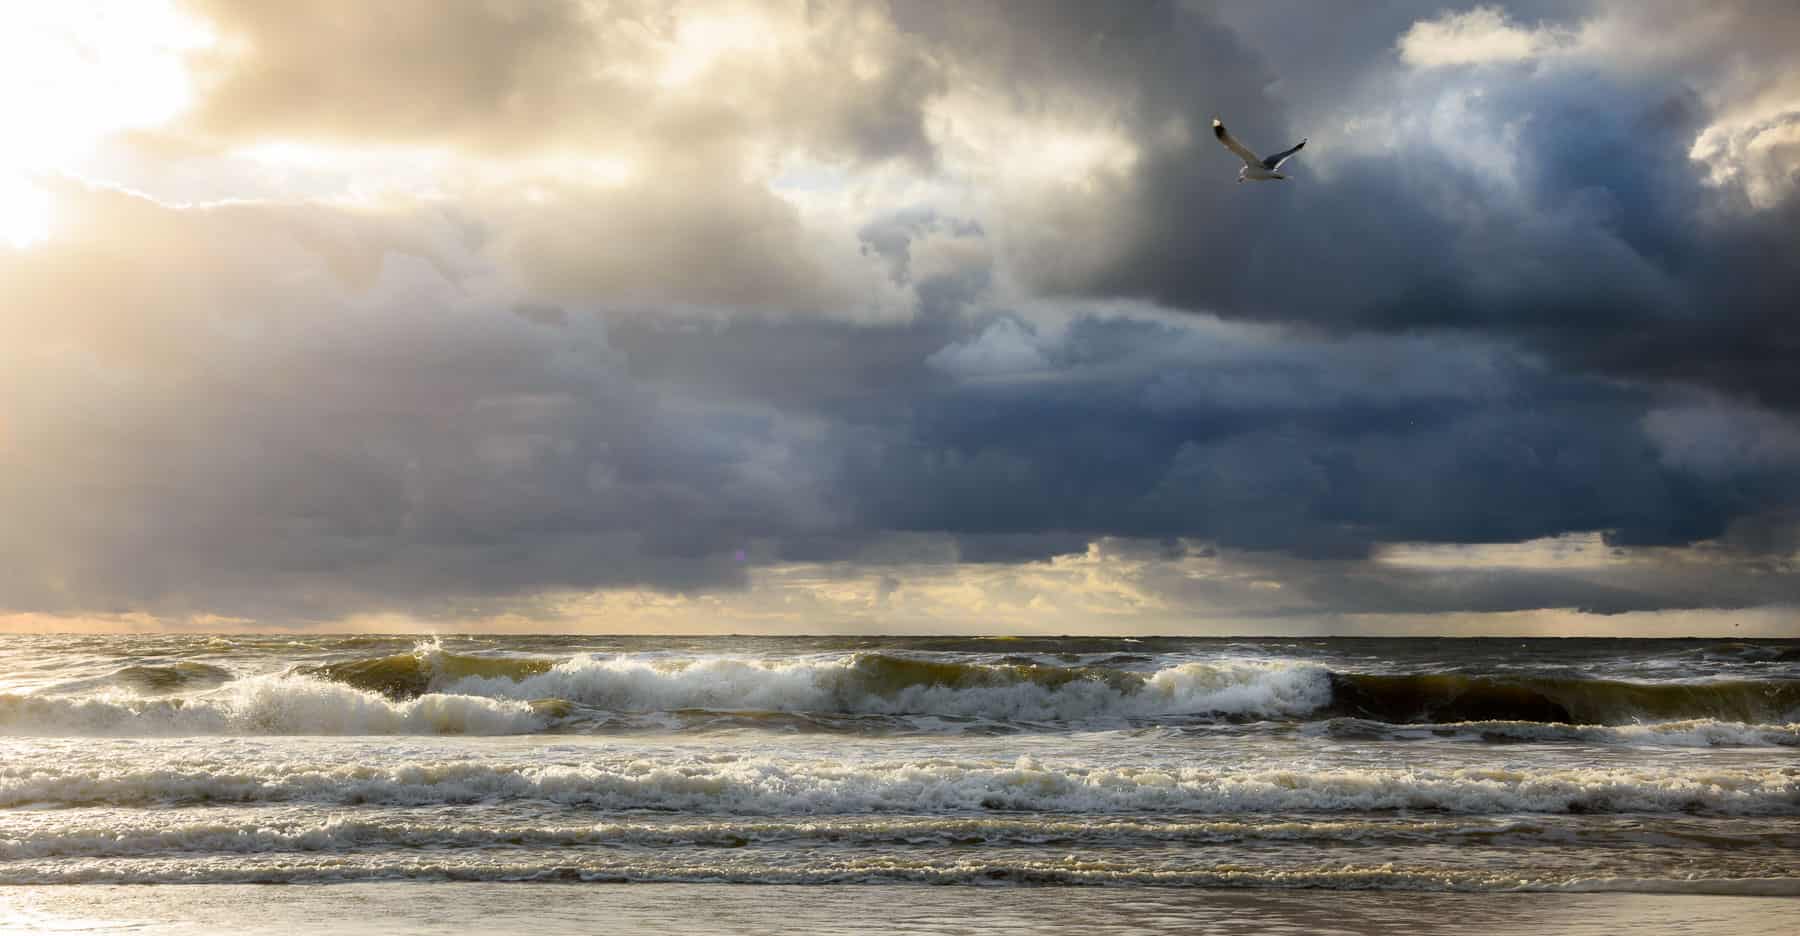 Texel storm at sea